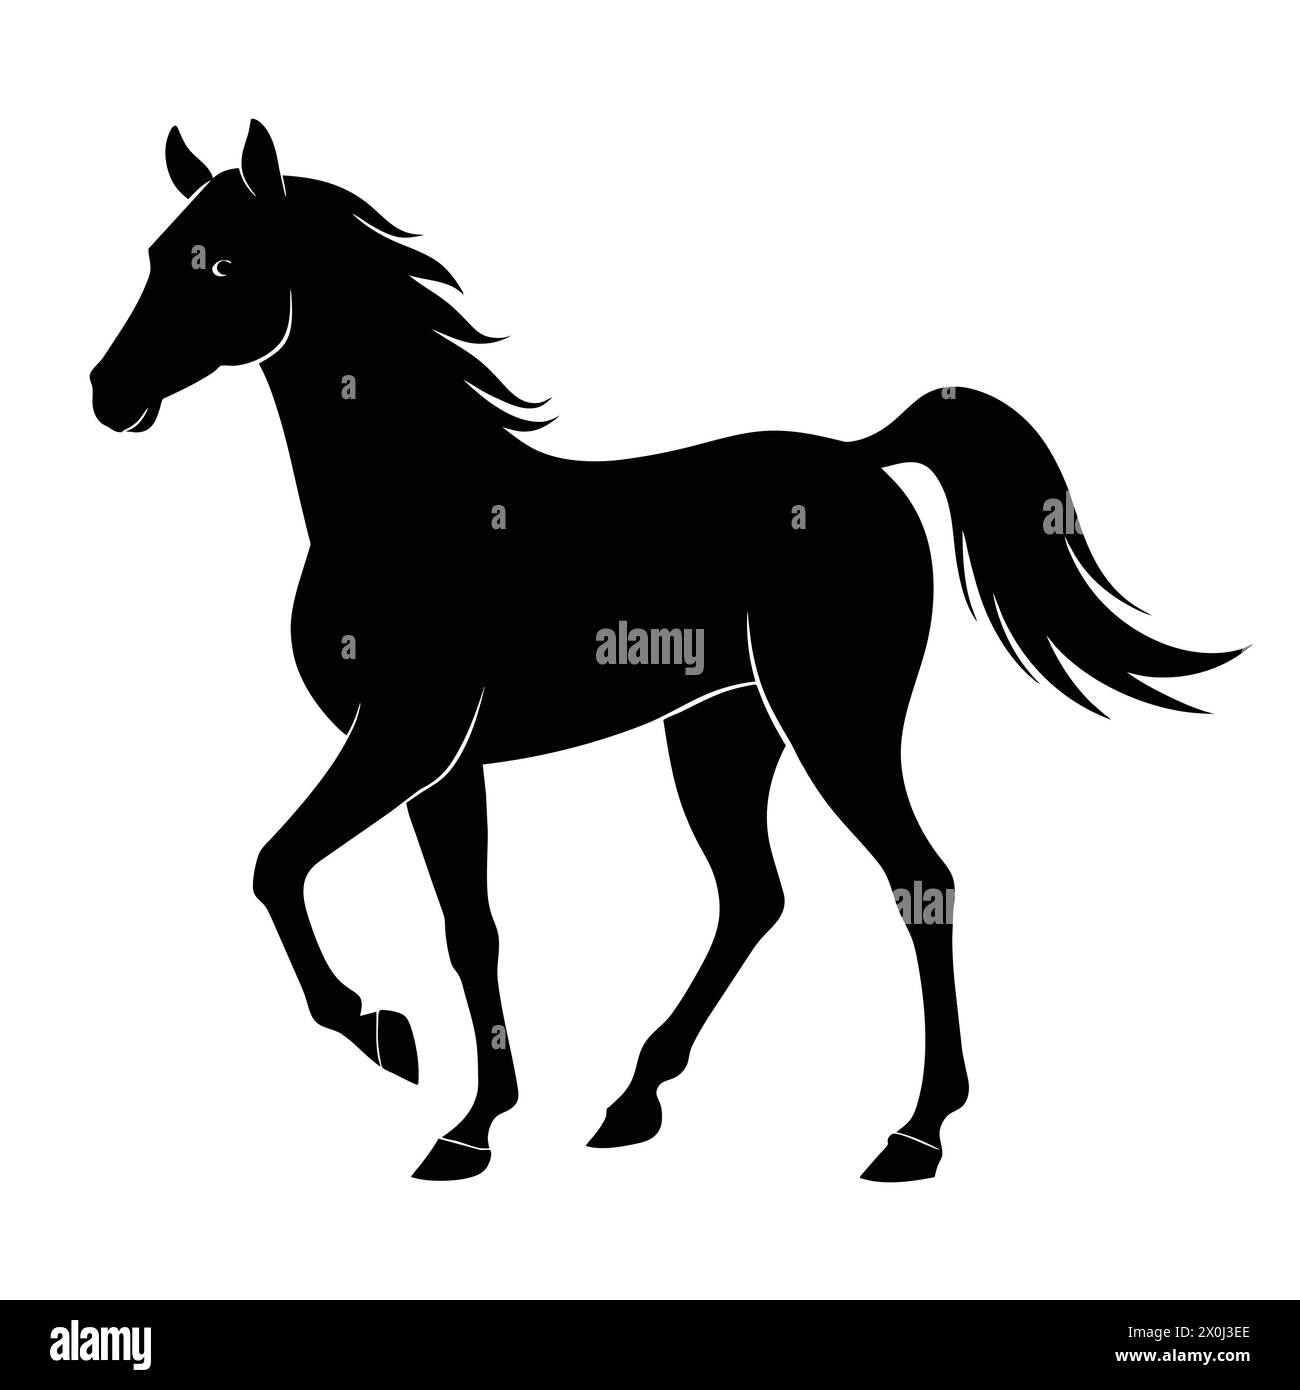 Illustrazioni di cavalli - ideale per il Branding equestre, le stampe artistiche e l'arredamento di fattorie Illustrazione Vettoriale